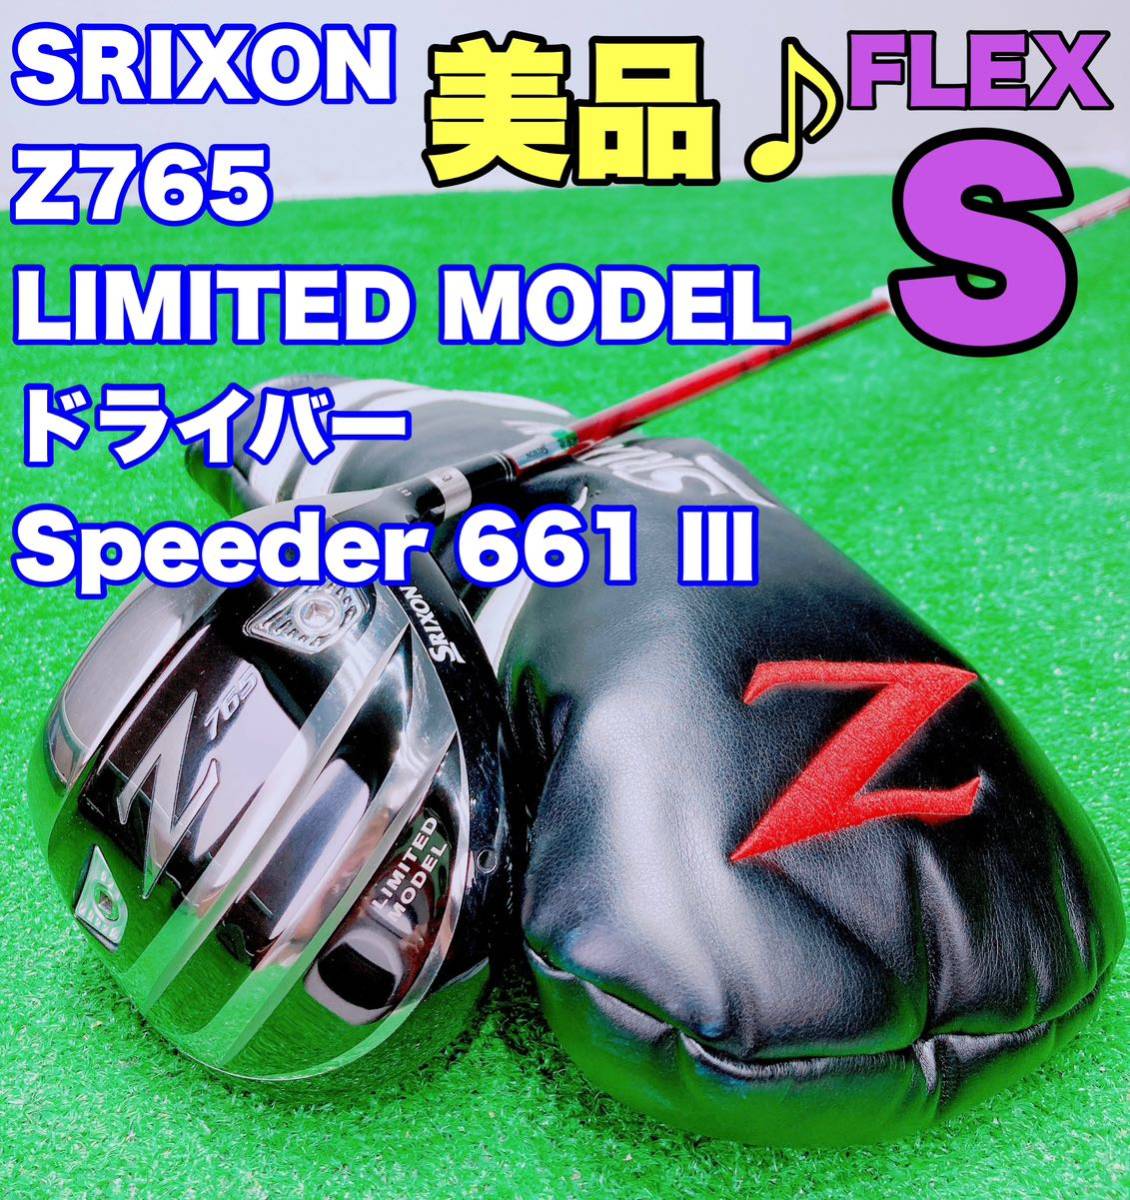 ★希少 美品♪限定モデル◆ SRIXON スリクソン Z765 LIMITED MODEL 1w ドライバー/9.5° speeder 661 EVOLUTION Ⅲ FLEX S リミテッド Z